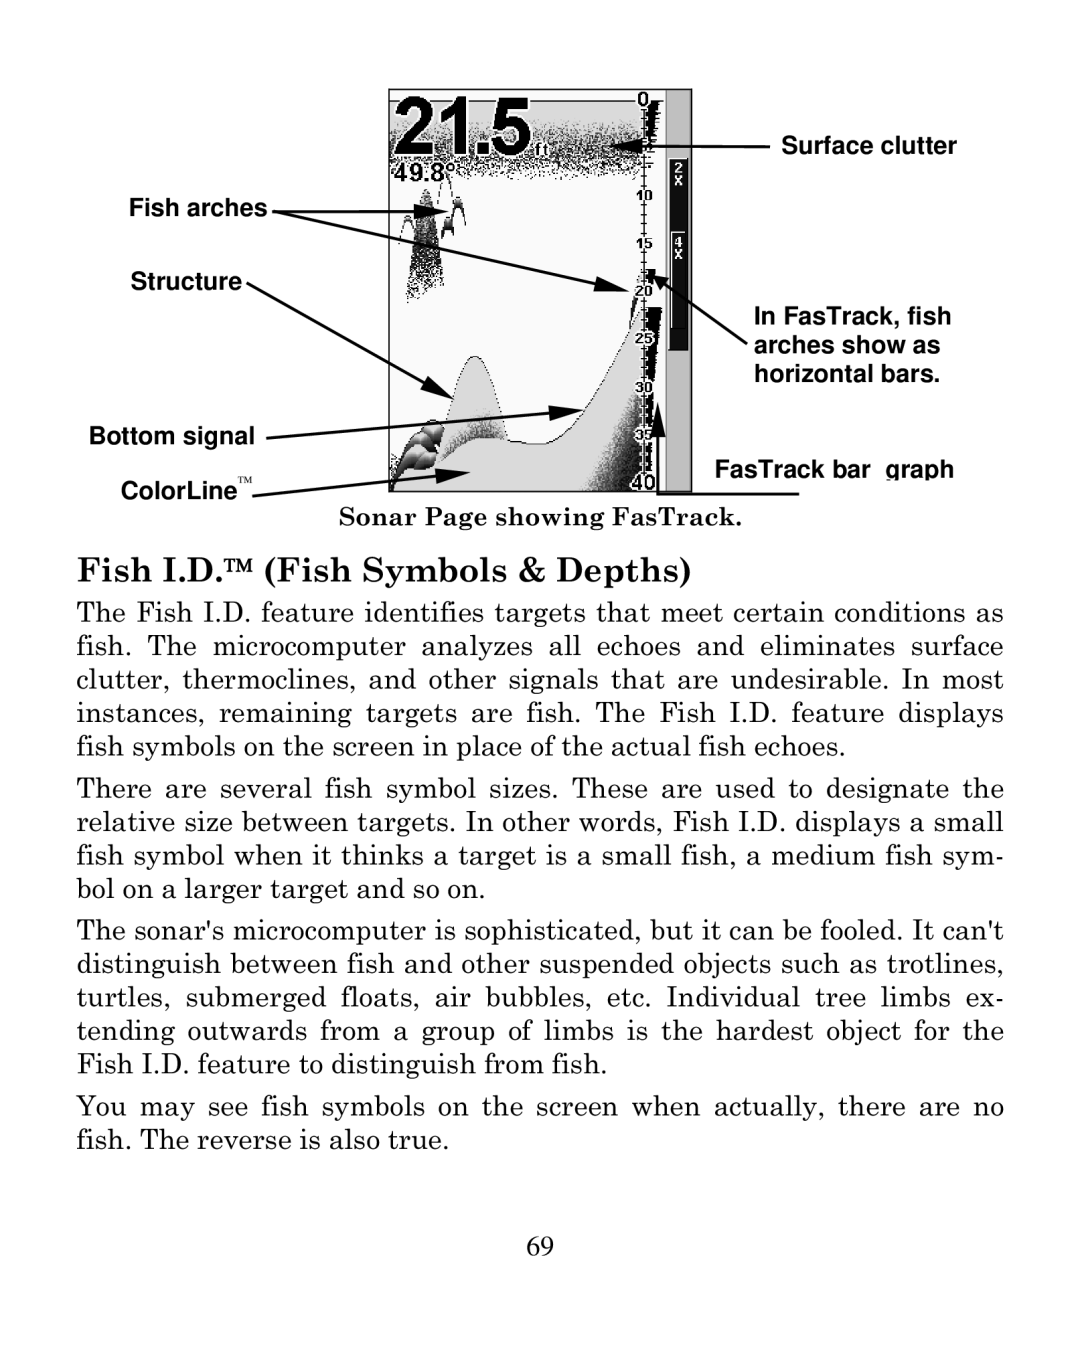 Eagle Electronics 320C manual Fish I.D. Fish Symbols & Depths 